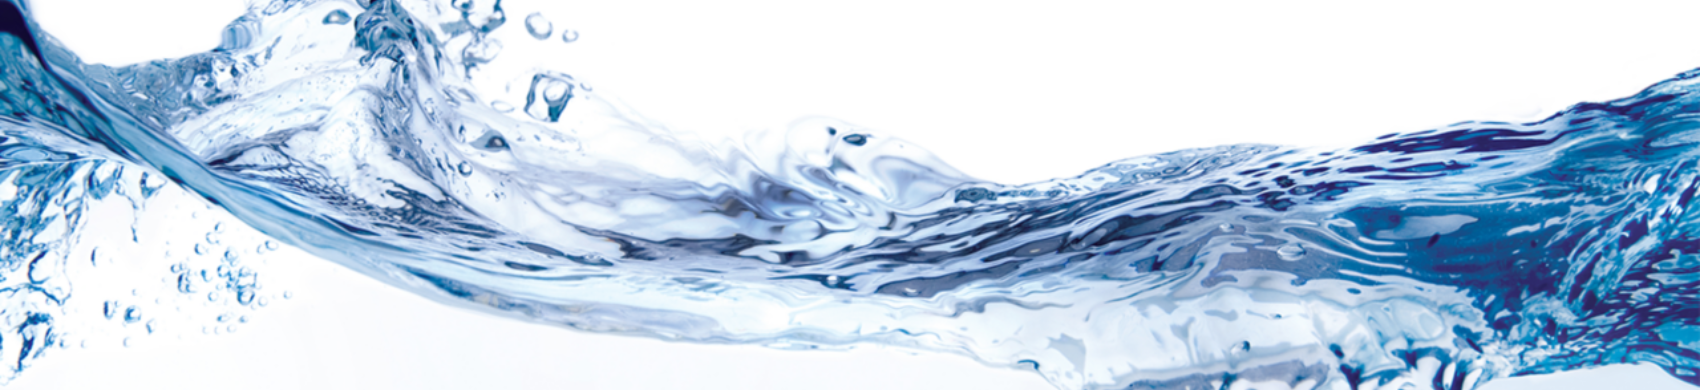 Water Testing & Analysis - Vita Filters